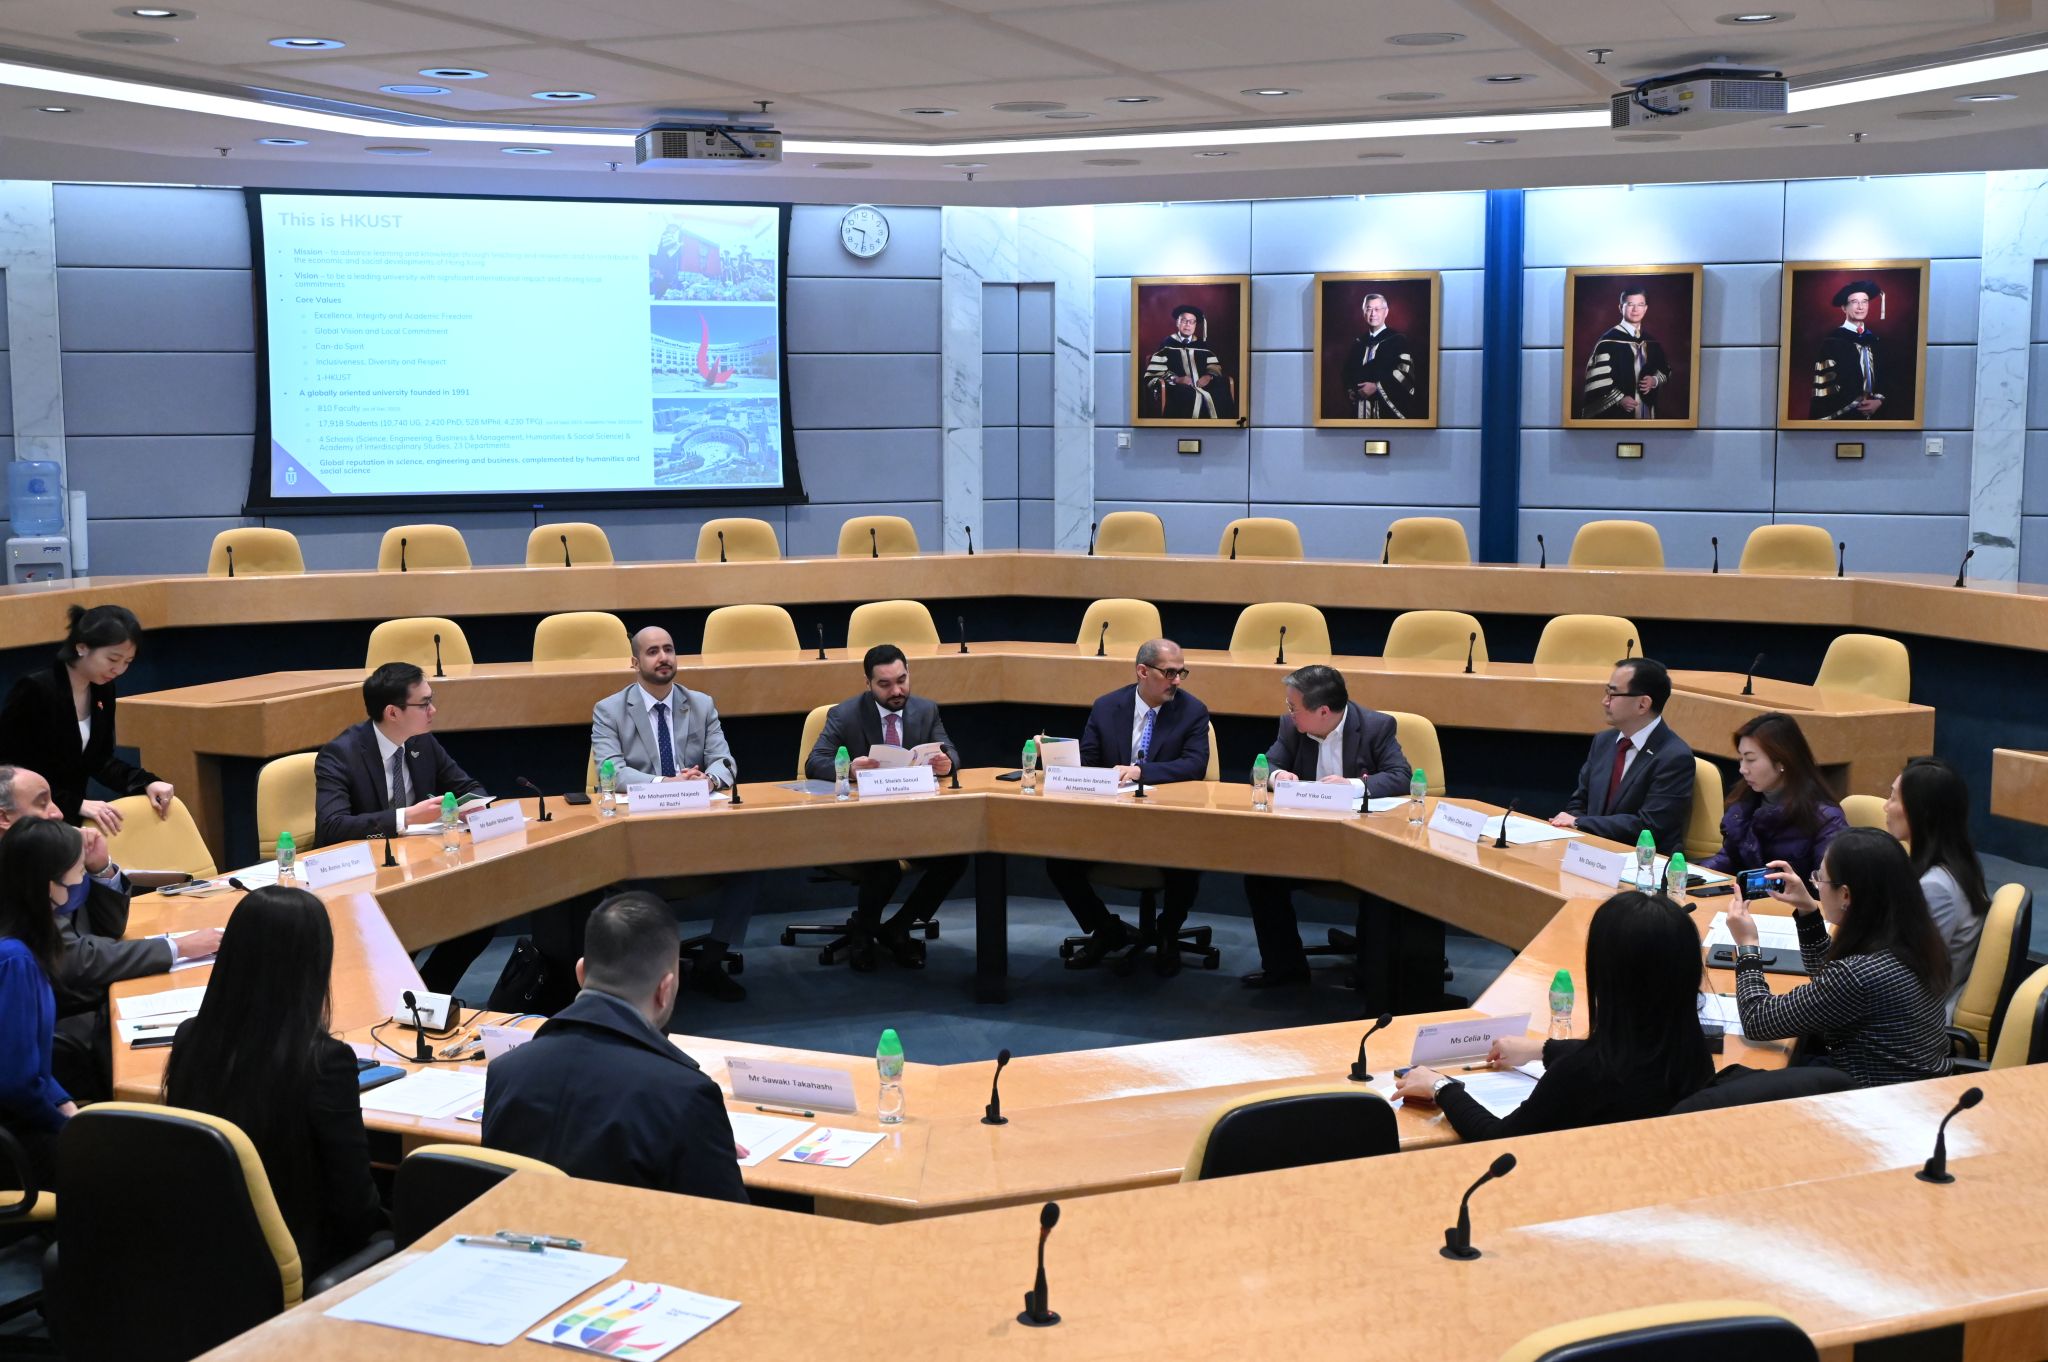 阿聯酋代表團與科大首席副校長郭毅可教授及科大團隊進行會議，探討雙方如何進一步加強合作，並促進阿聯酋與科大之間更緊密的聯繫。